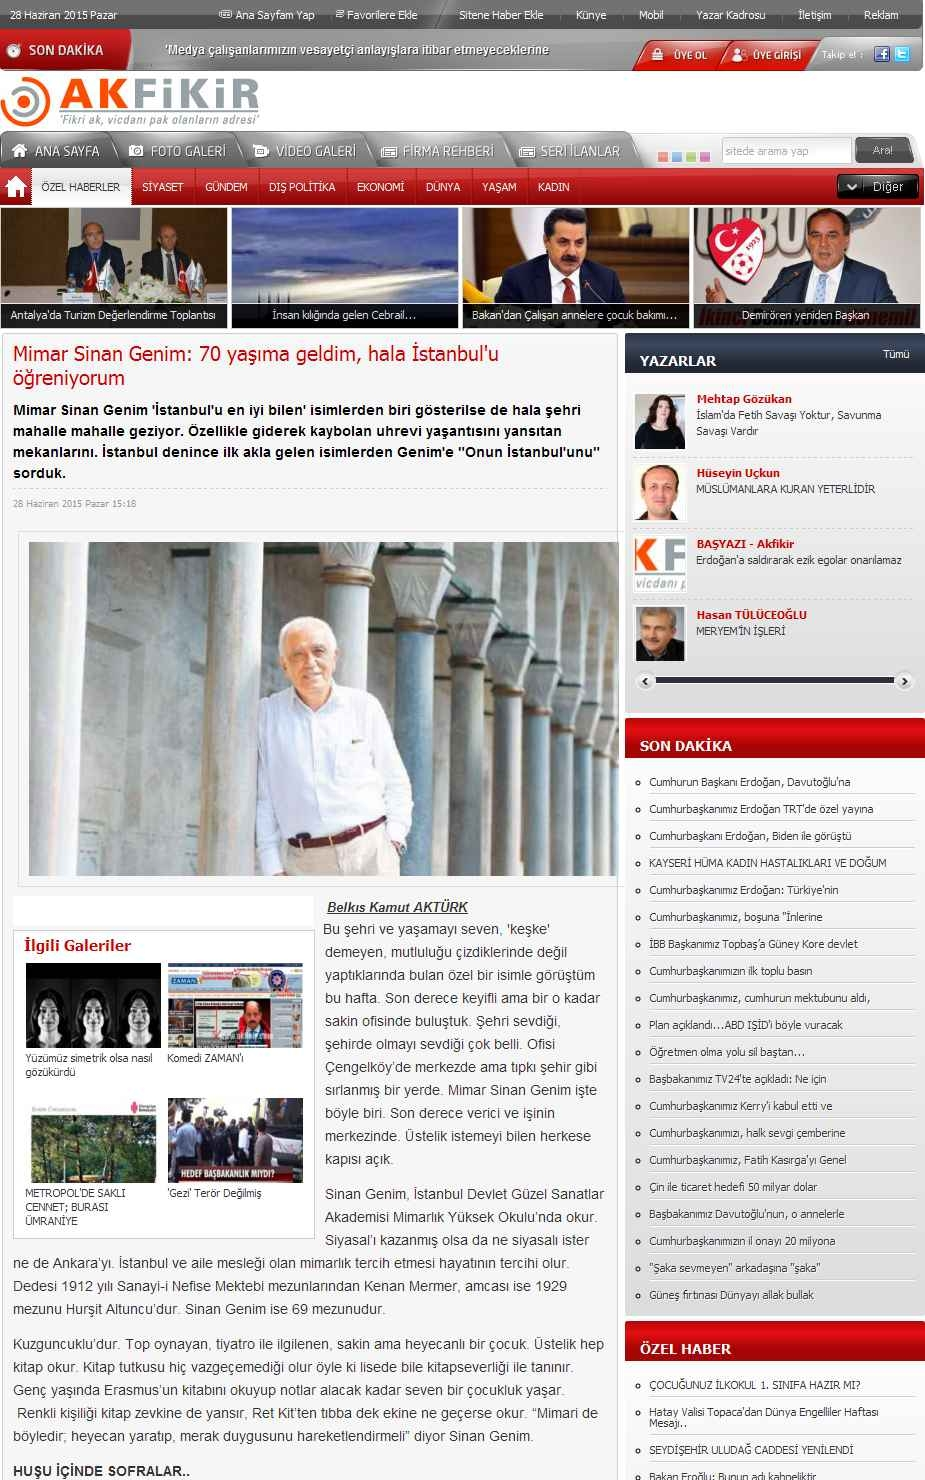 MIMAR SINAN GENIM: 70 YASIMA GELDIM, HALA ISTANBUL'U ÖGRENIYOR... Portal : www.akfikir.com İçeriği : Gündem Tarih : 28.06.